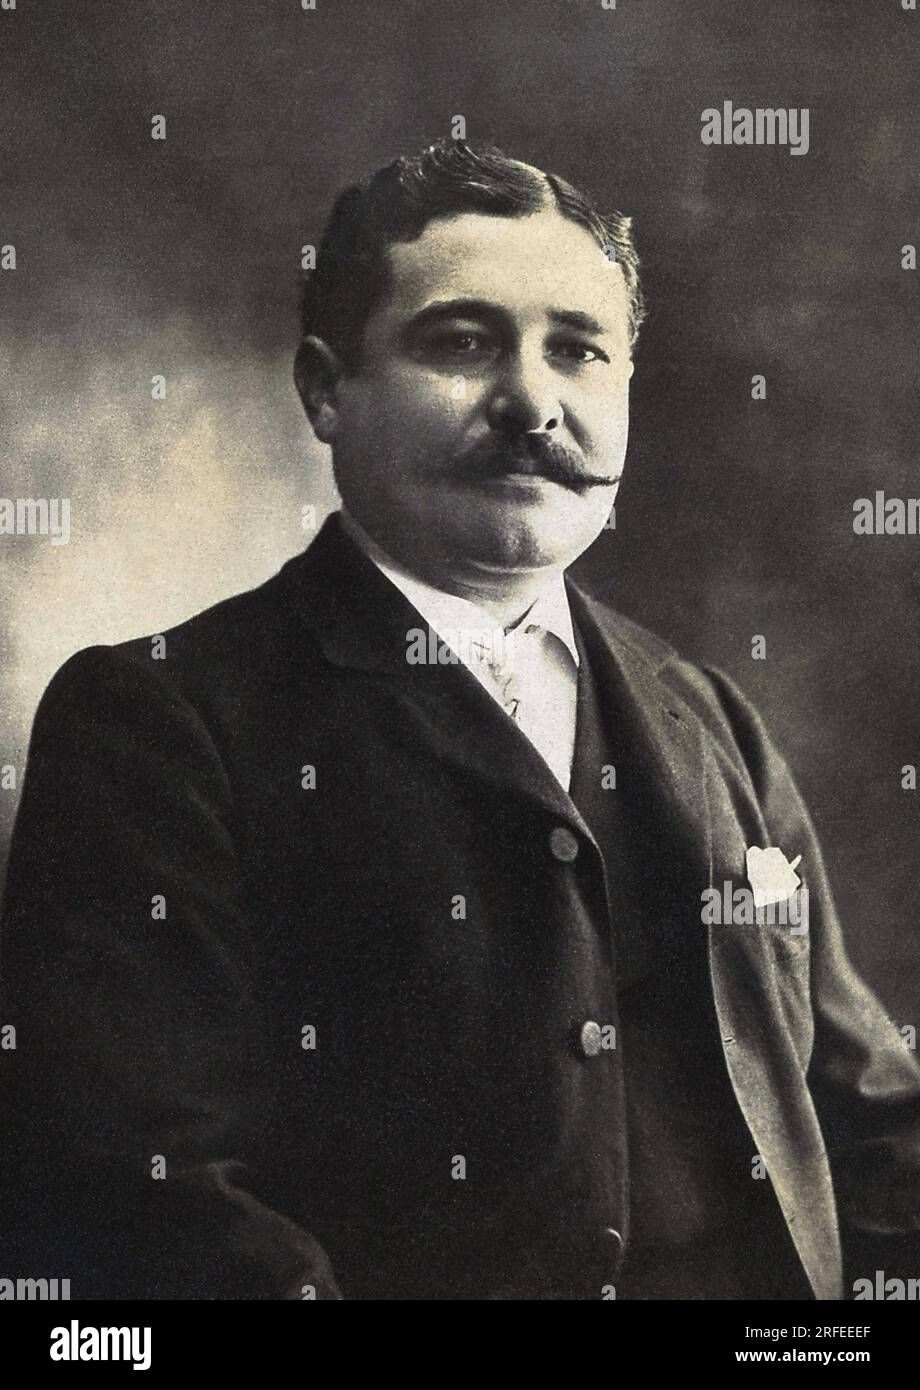 Portrait de Leon Daudet (1867-1942), ecrivain, journaliste et homme politique francais. Photographie, debut du 20e siecle. Stock Photo